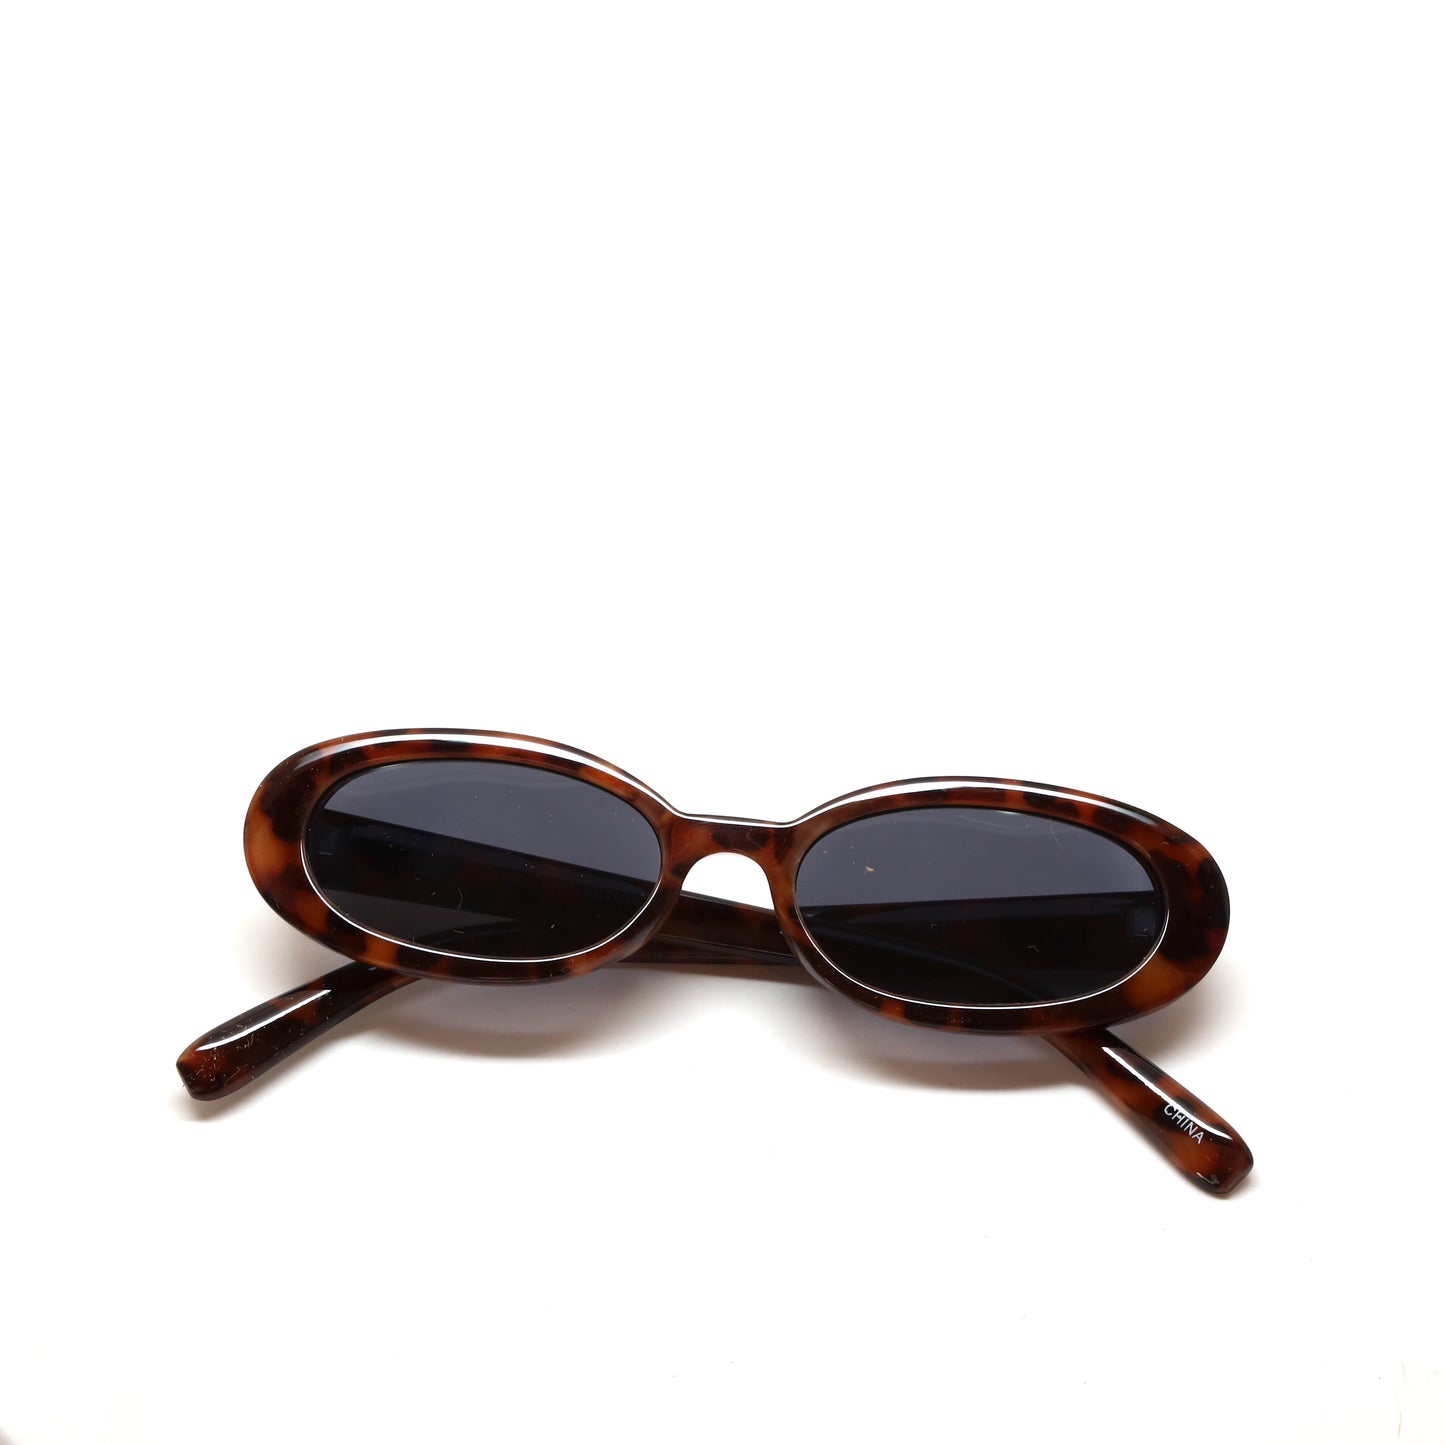 Retro Modern Standard Oval Frame Sunglasses - Tortoise